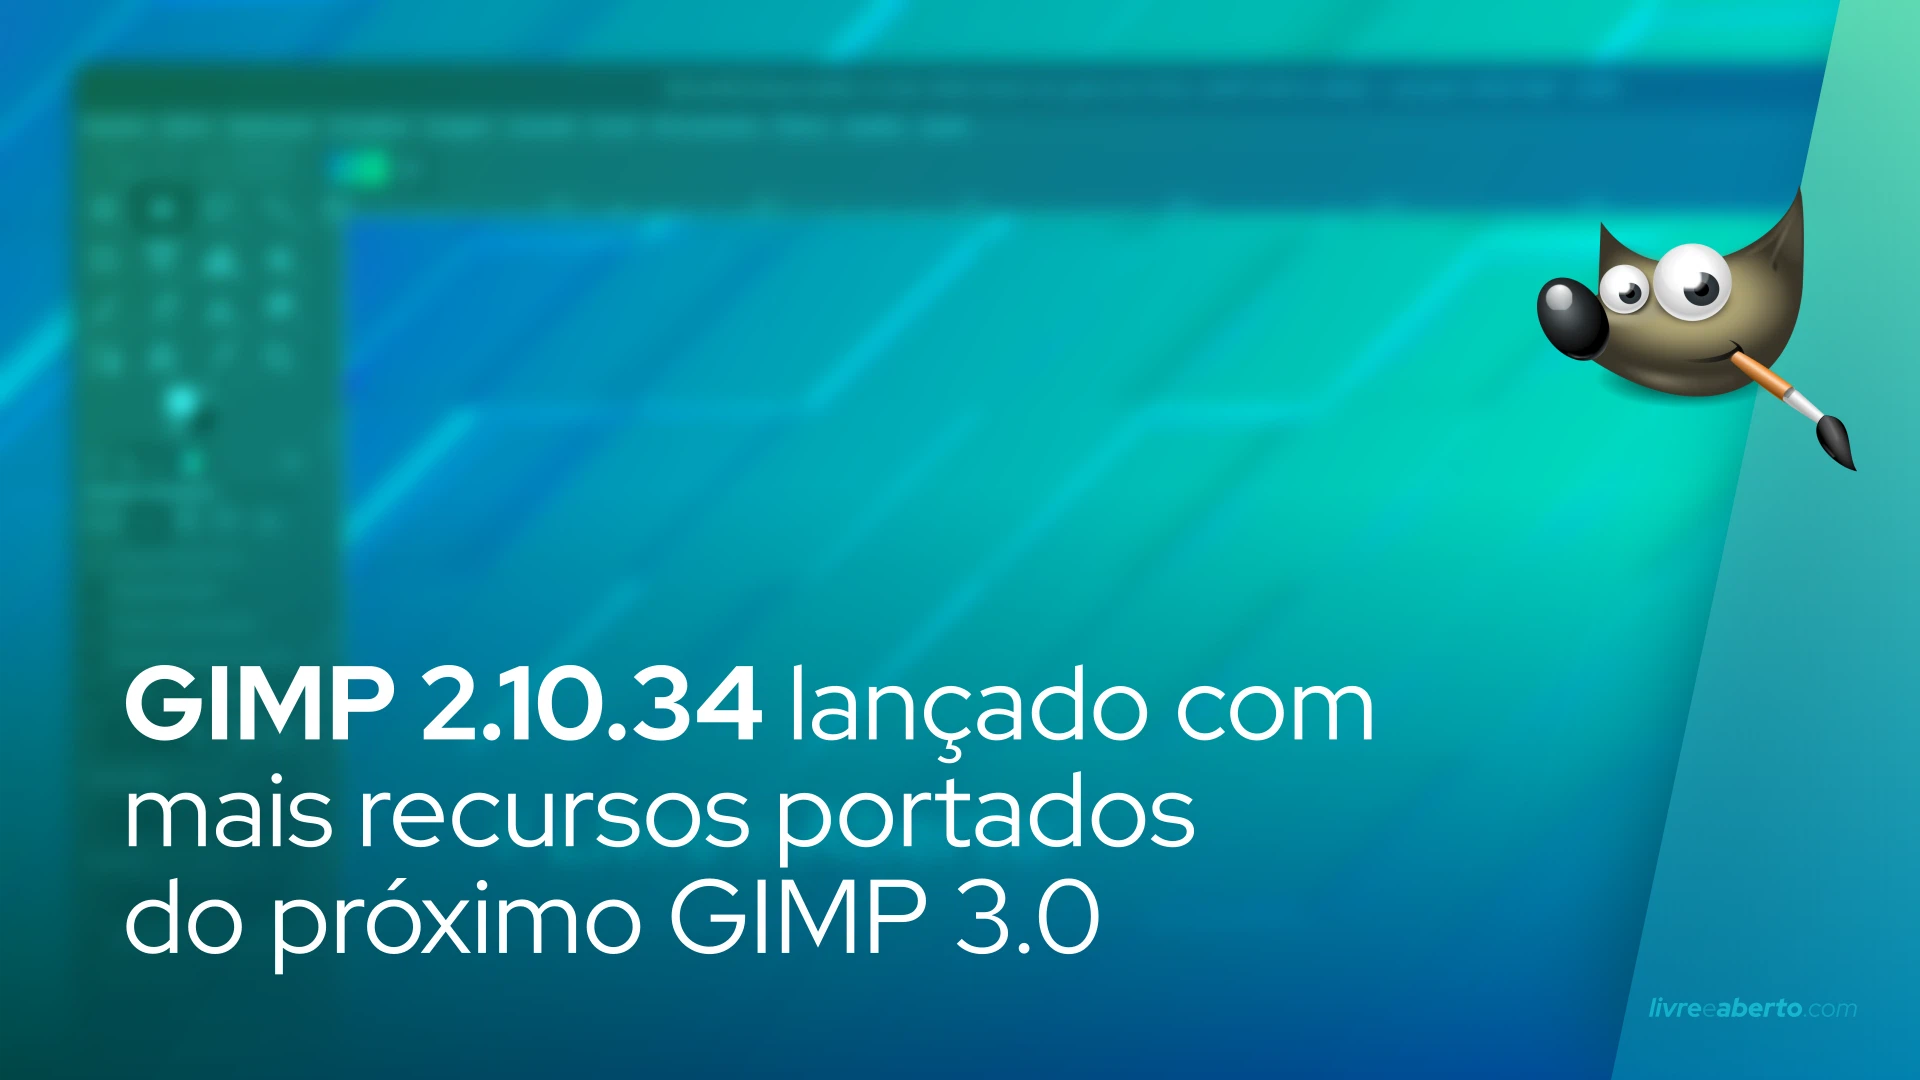 GIMP 2.10.34 lançado com mais recursos portados do próximo GIMP 3.0